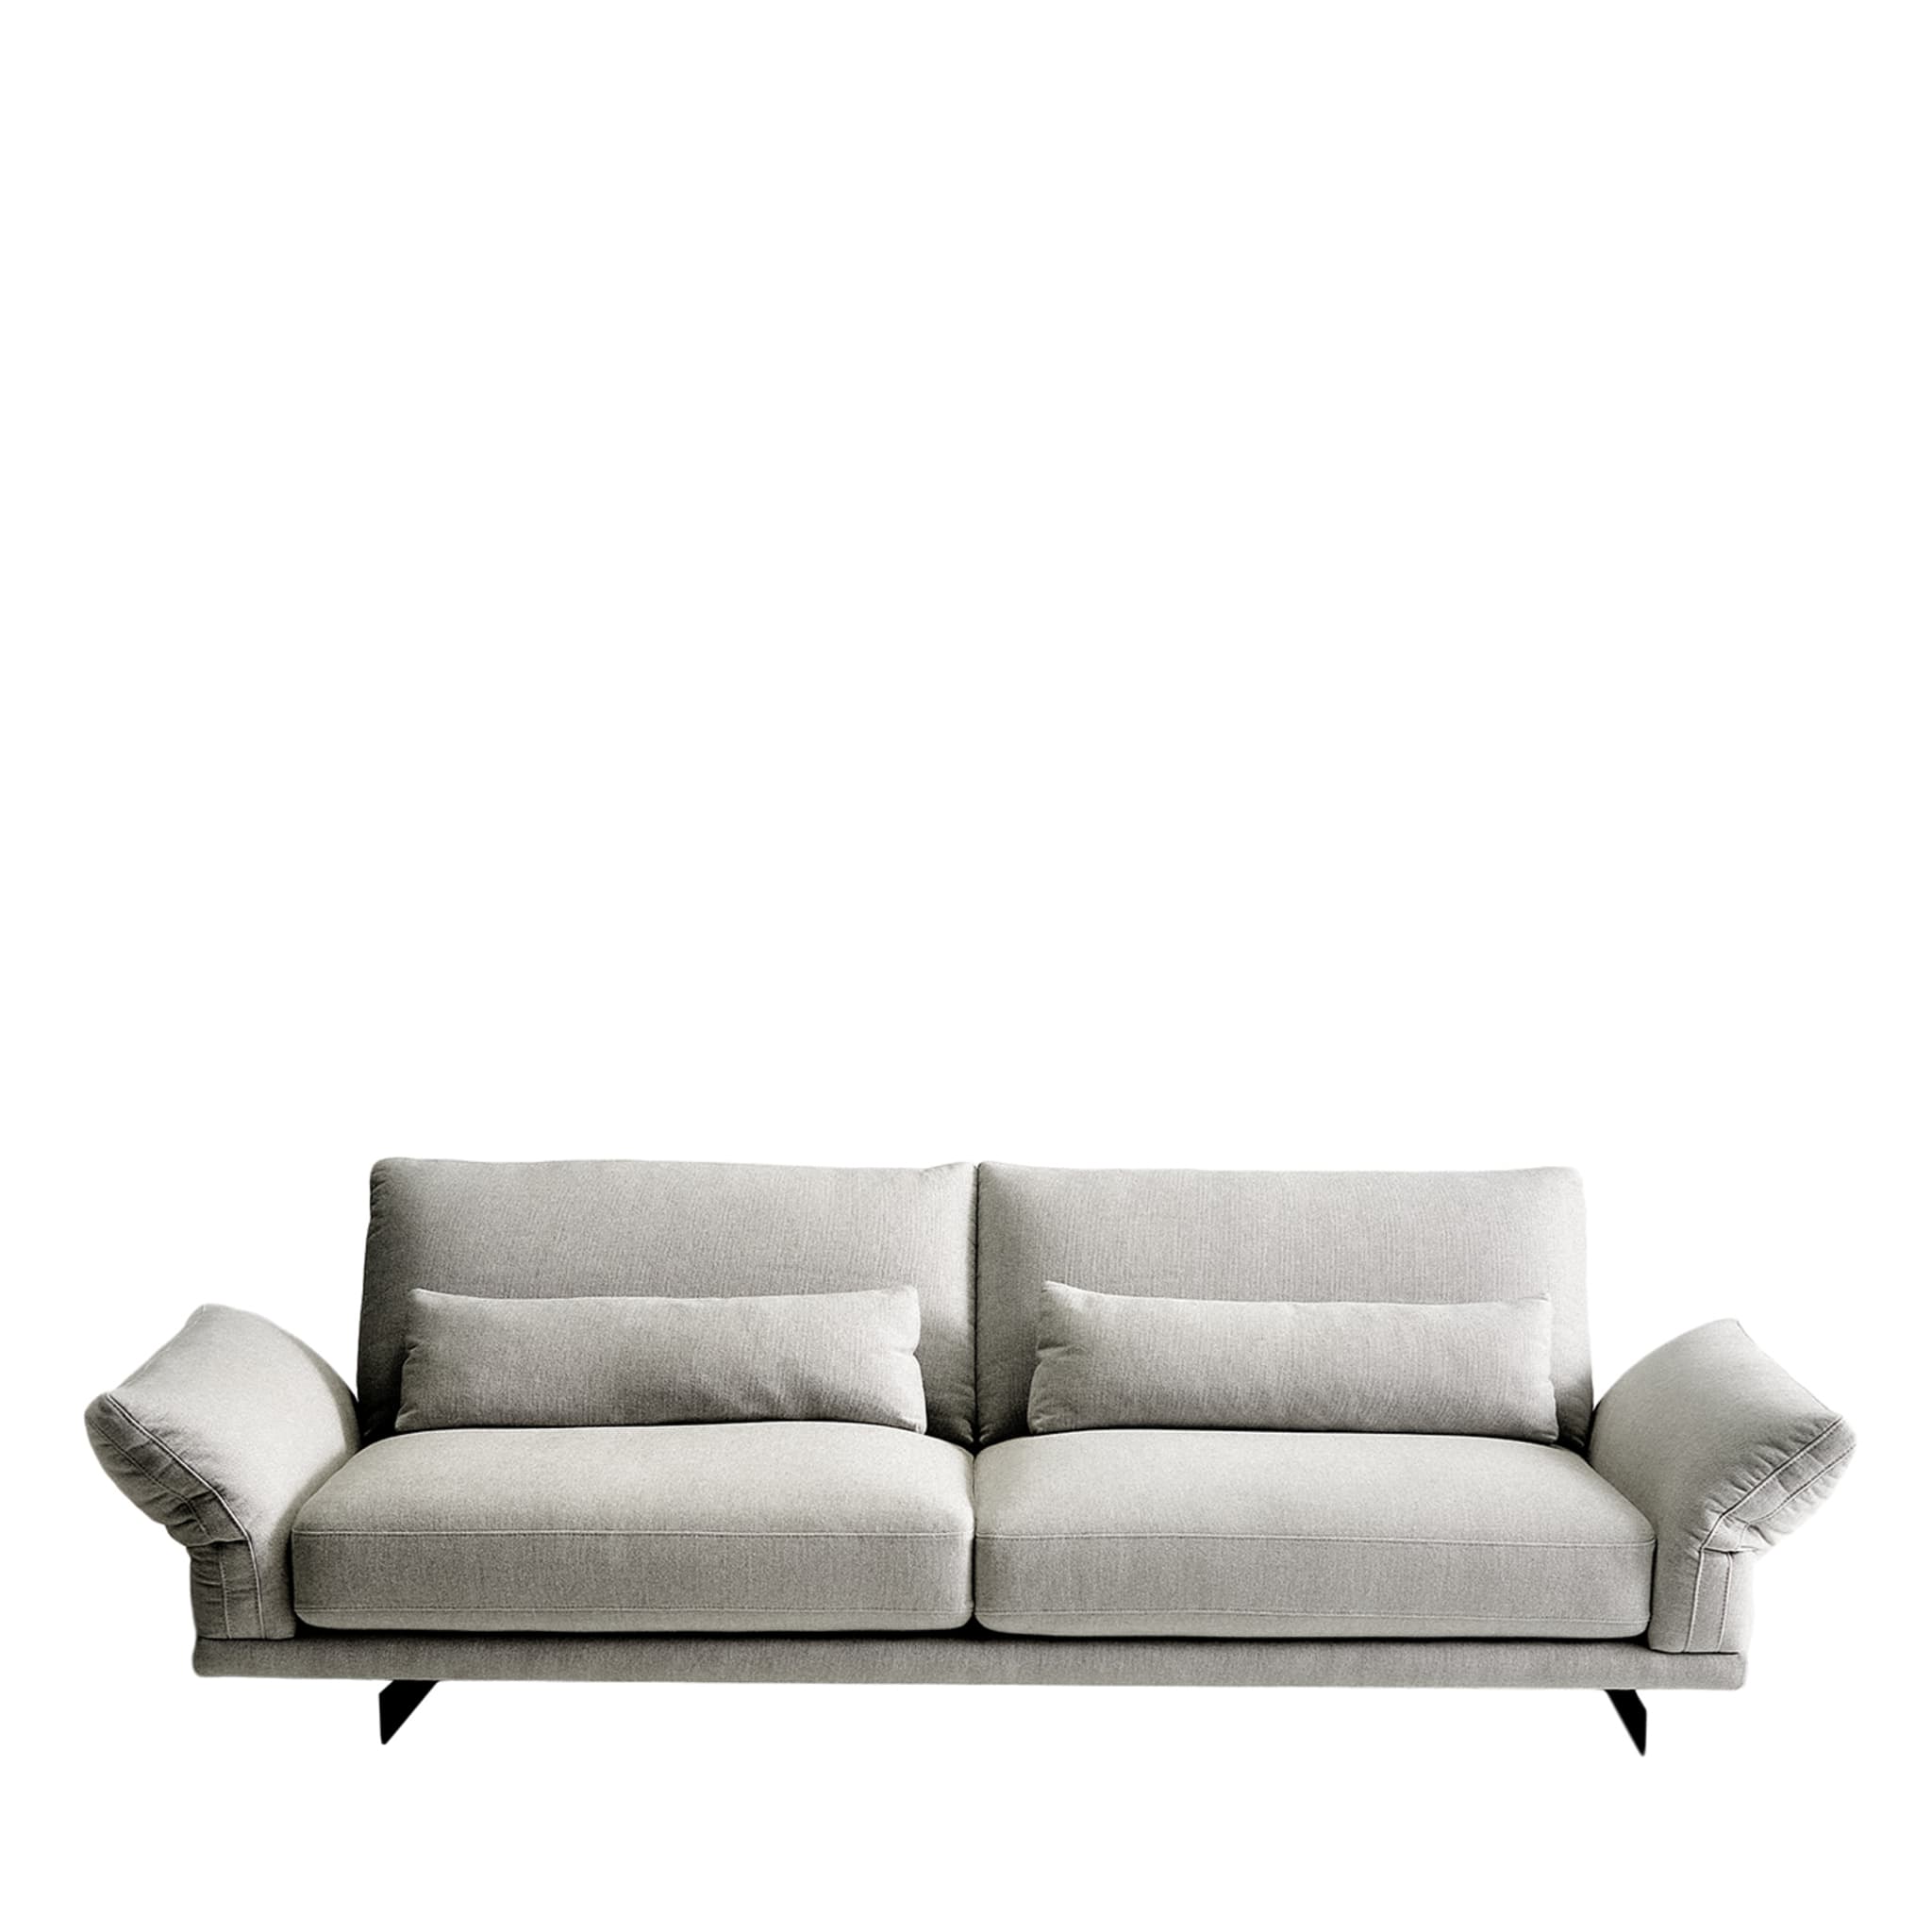 Beverly 3-sitzer graues sofa von Ludovica + Roberto Palomba - Hauptansicht